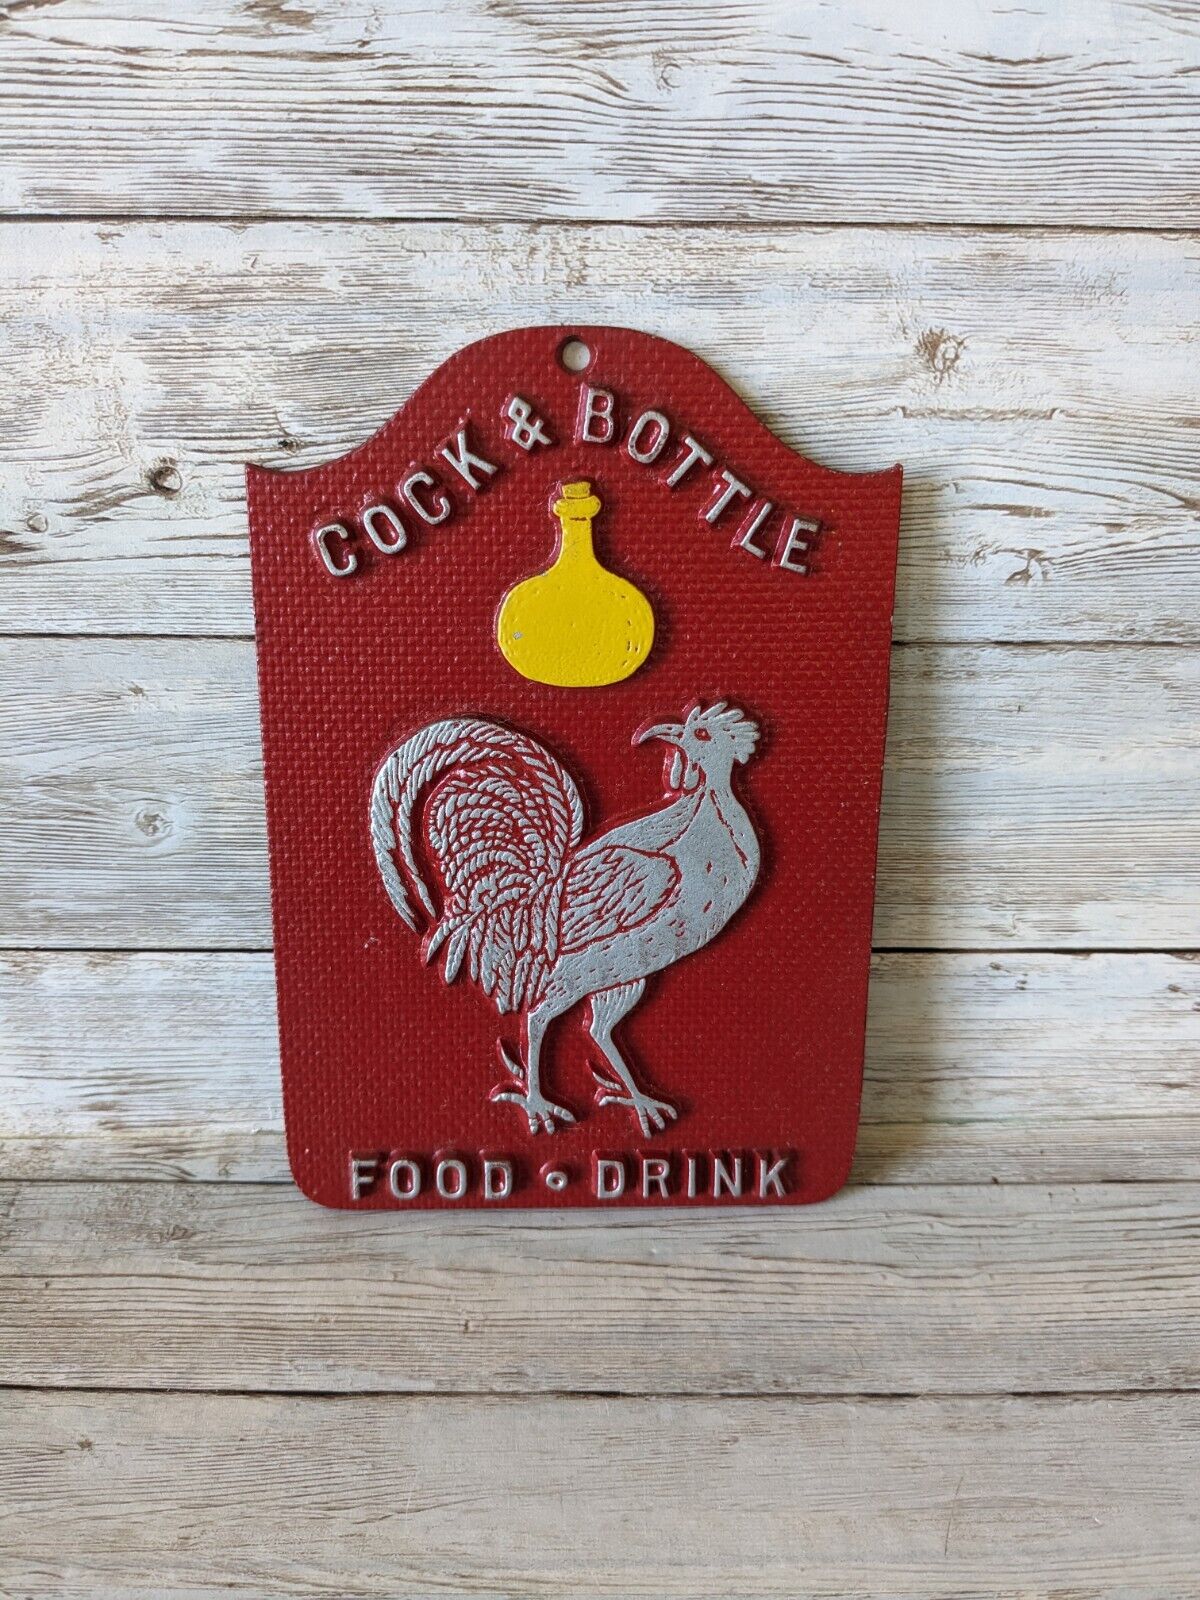 Vintage Metal Wall Sign Plaque Cock & Bottle Food Drink Man Cave Bar